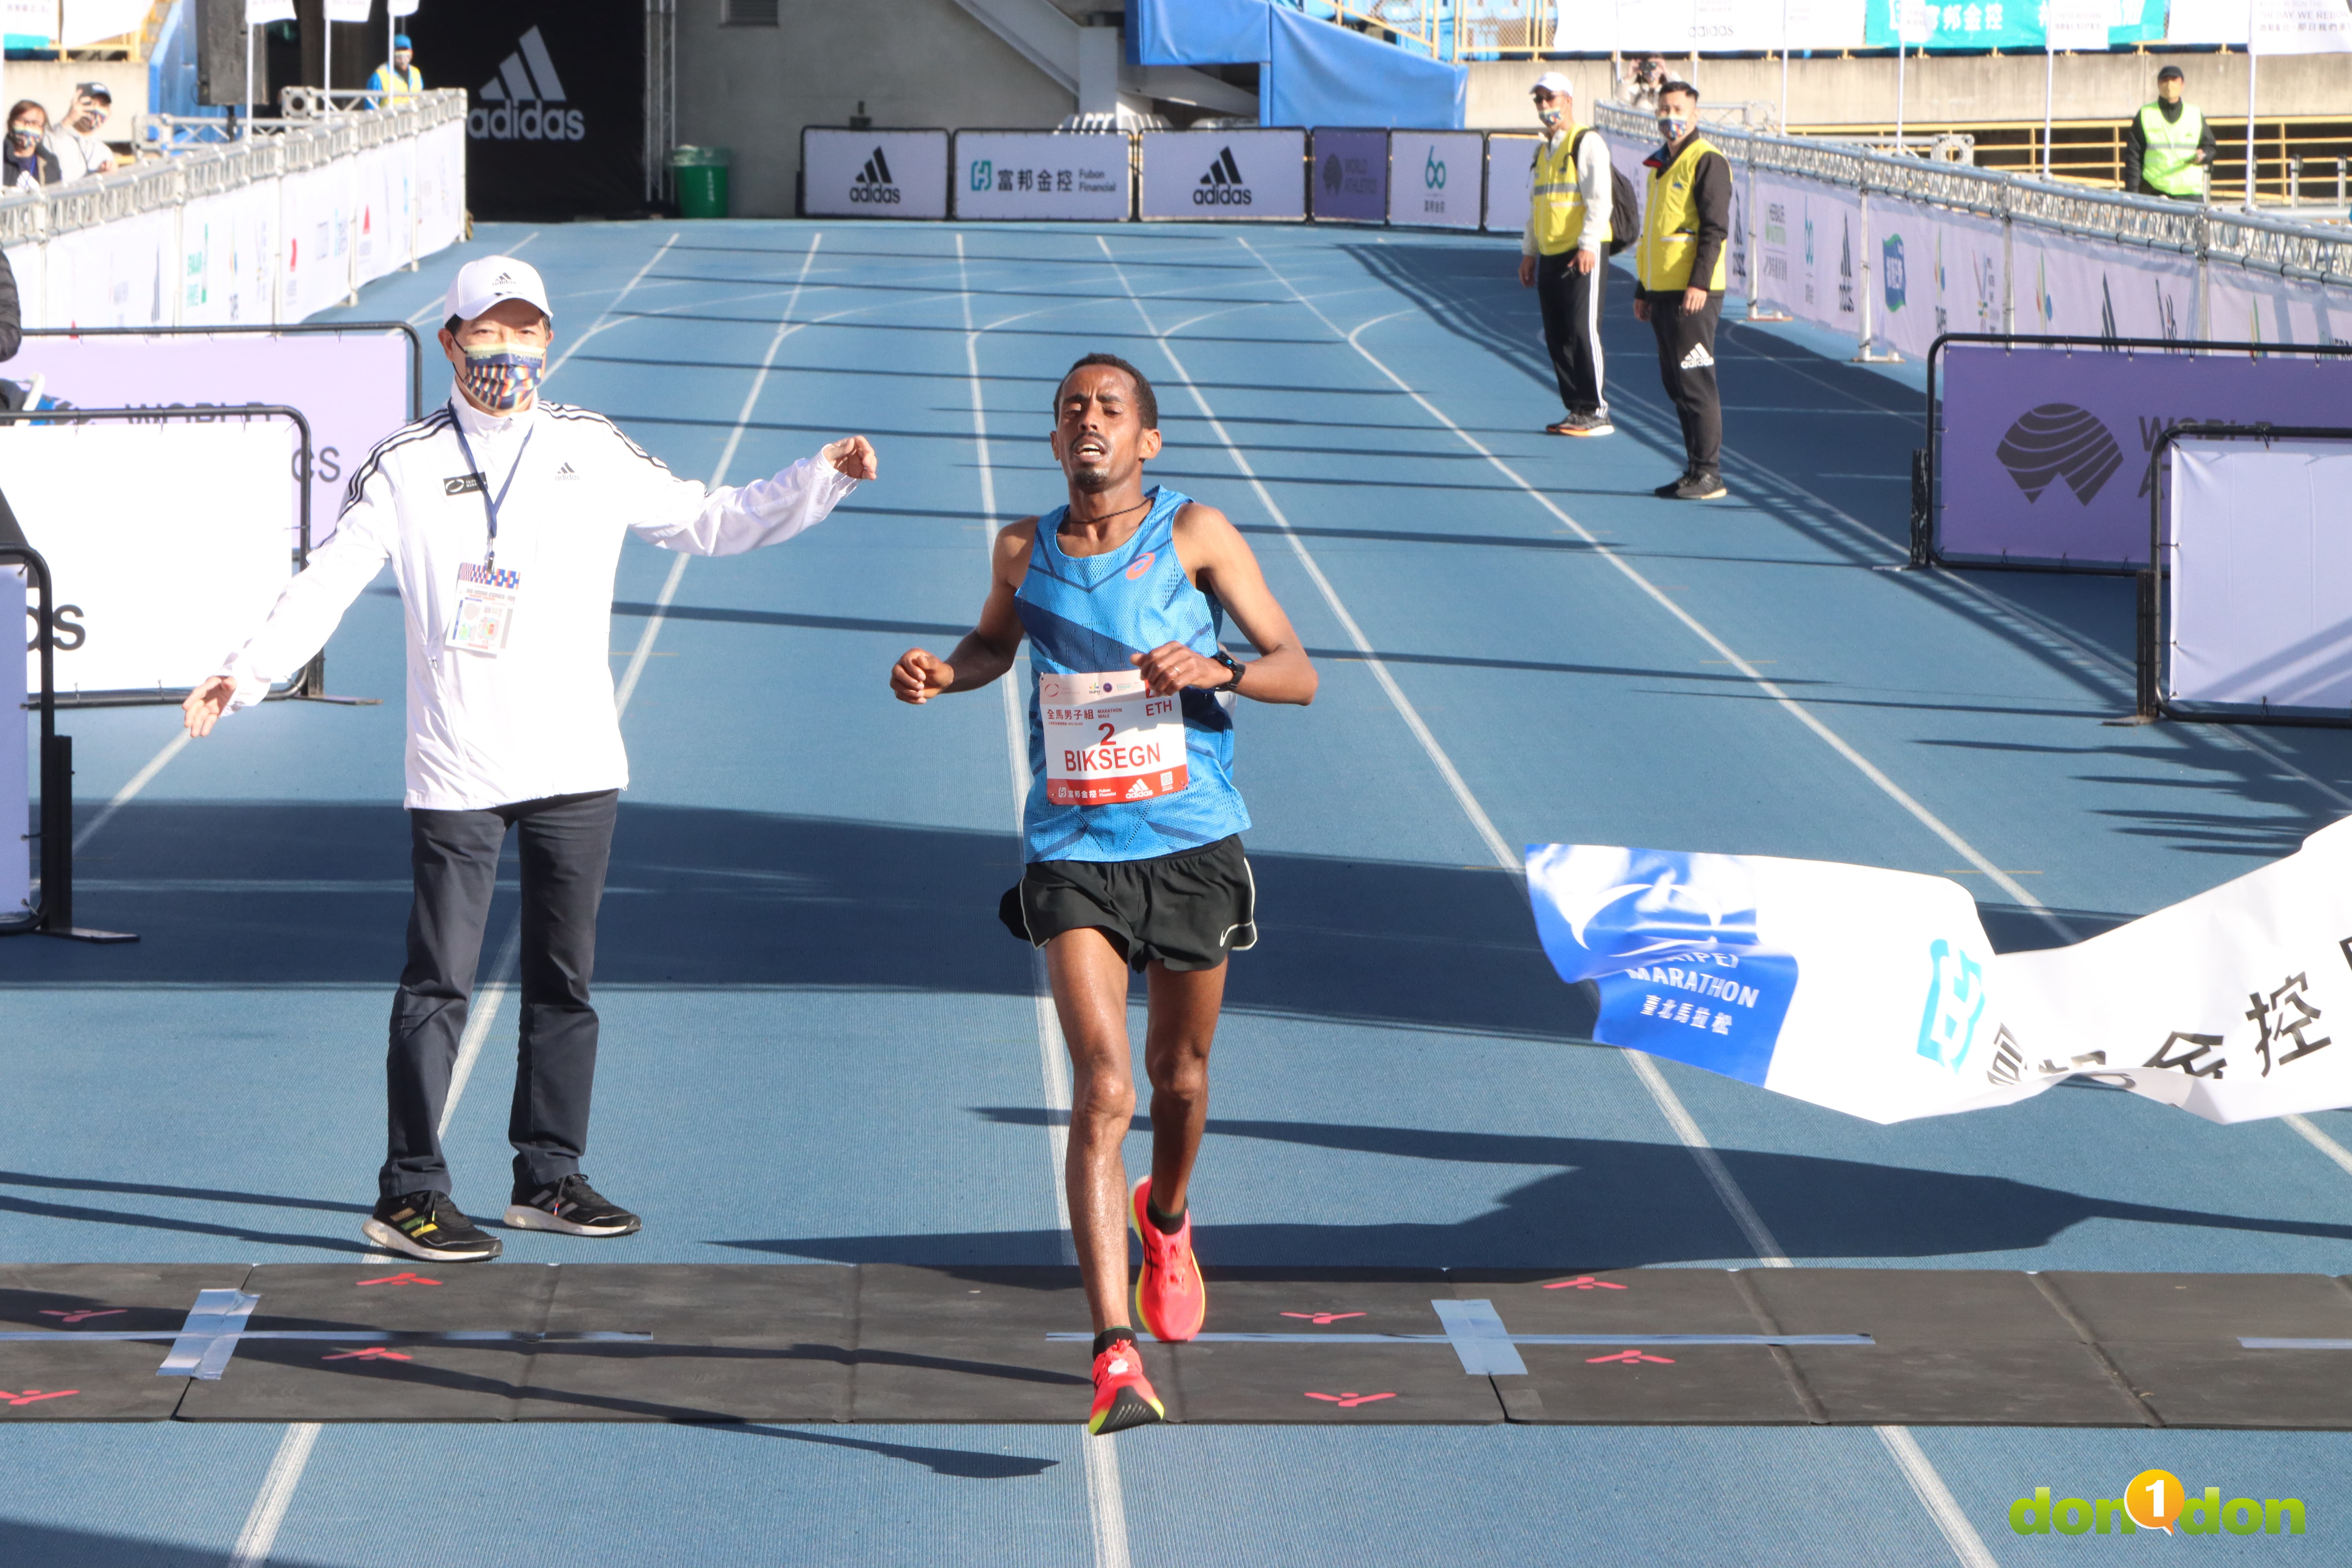 Demeke Kasaw BIKSEGN 逆轉跑出大會成績 2 小時 11 分 41 秒，拿下 2021 臺北馬拉松總冠軍！